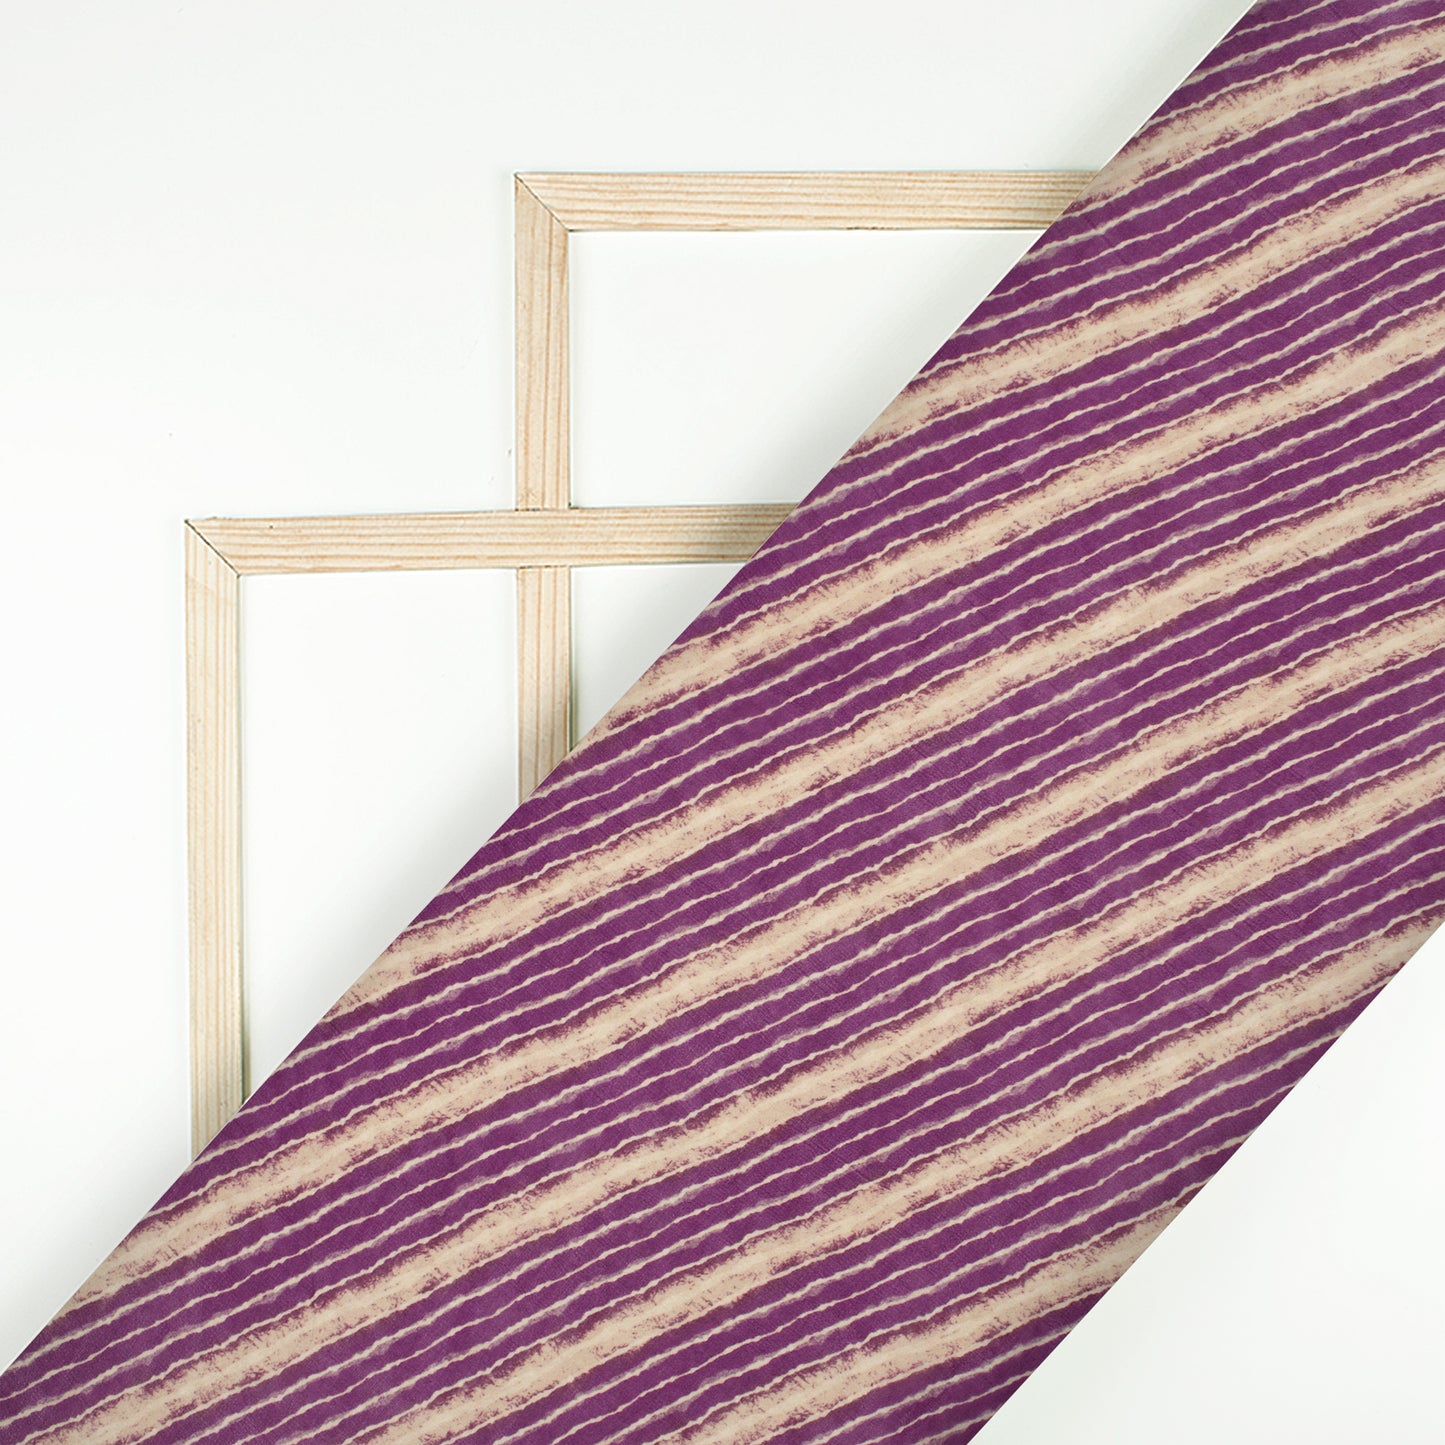 Purple Stripe Digital Print Viscose Georgette Fabric